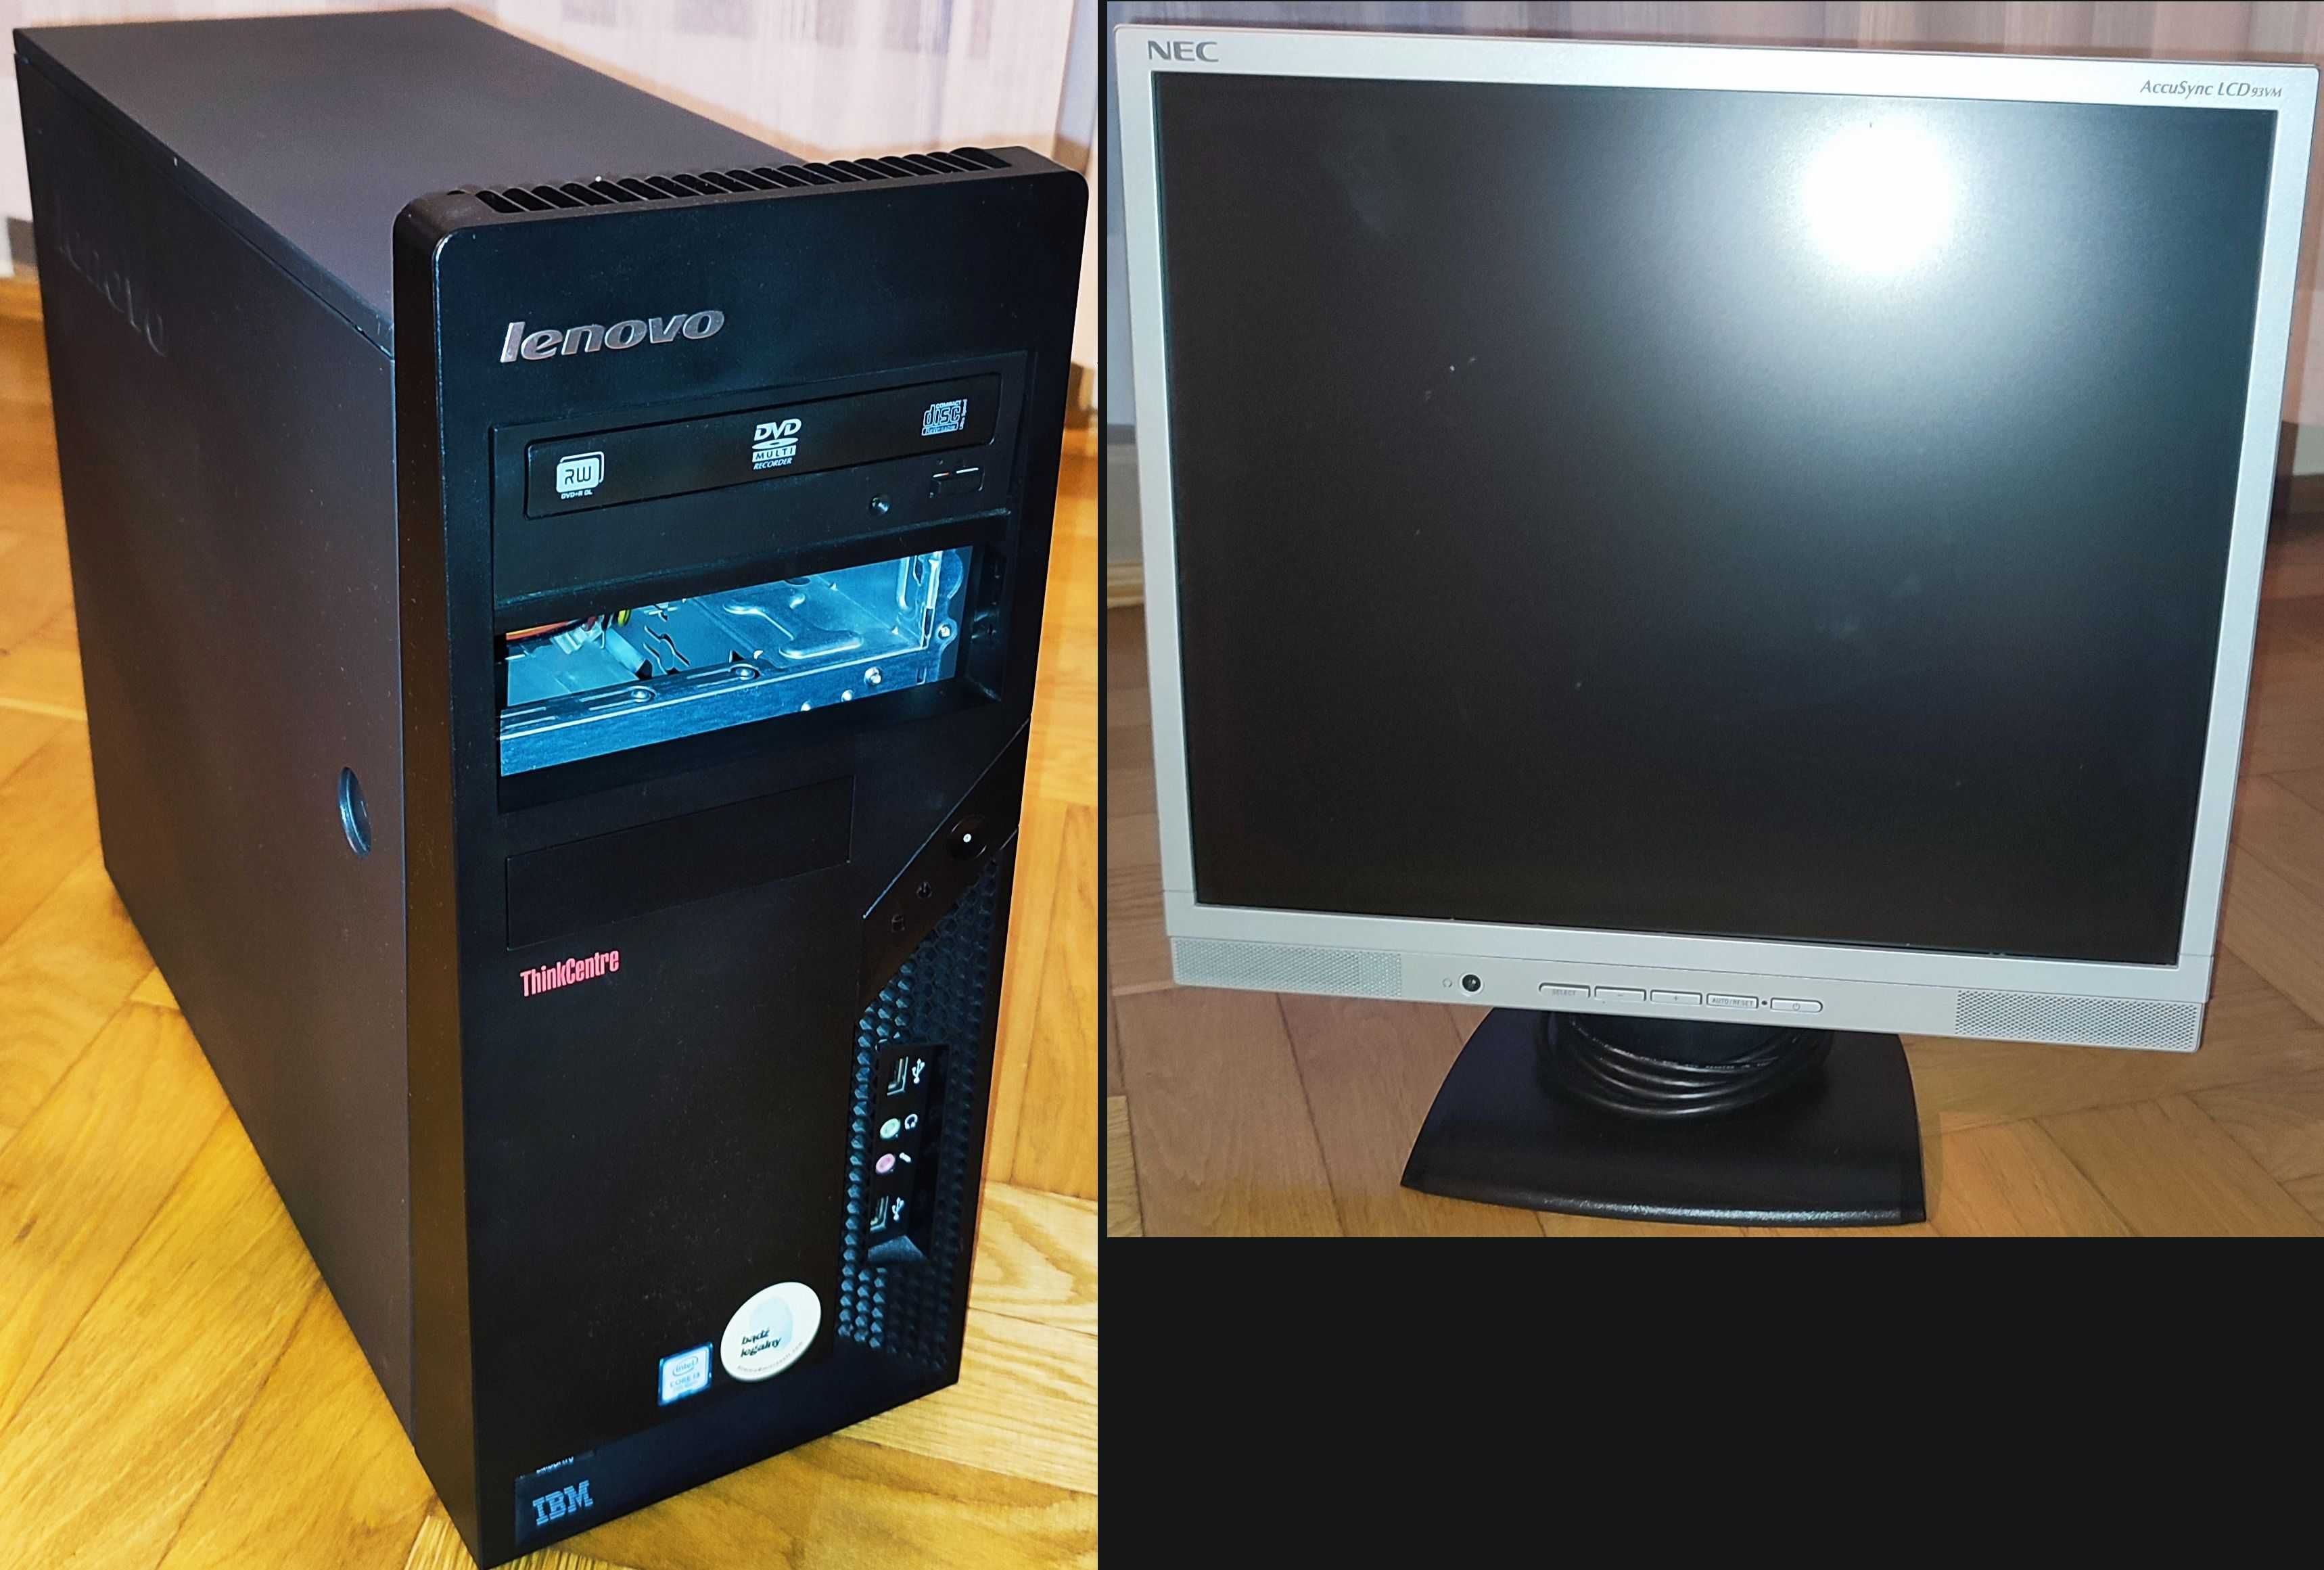 Zestaw PC z drukarką ML-2010, monitorem LCD 19" i Win10.